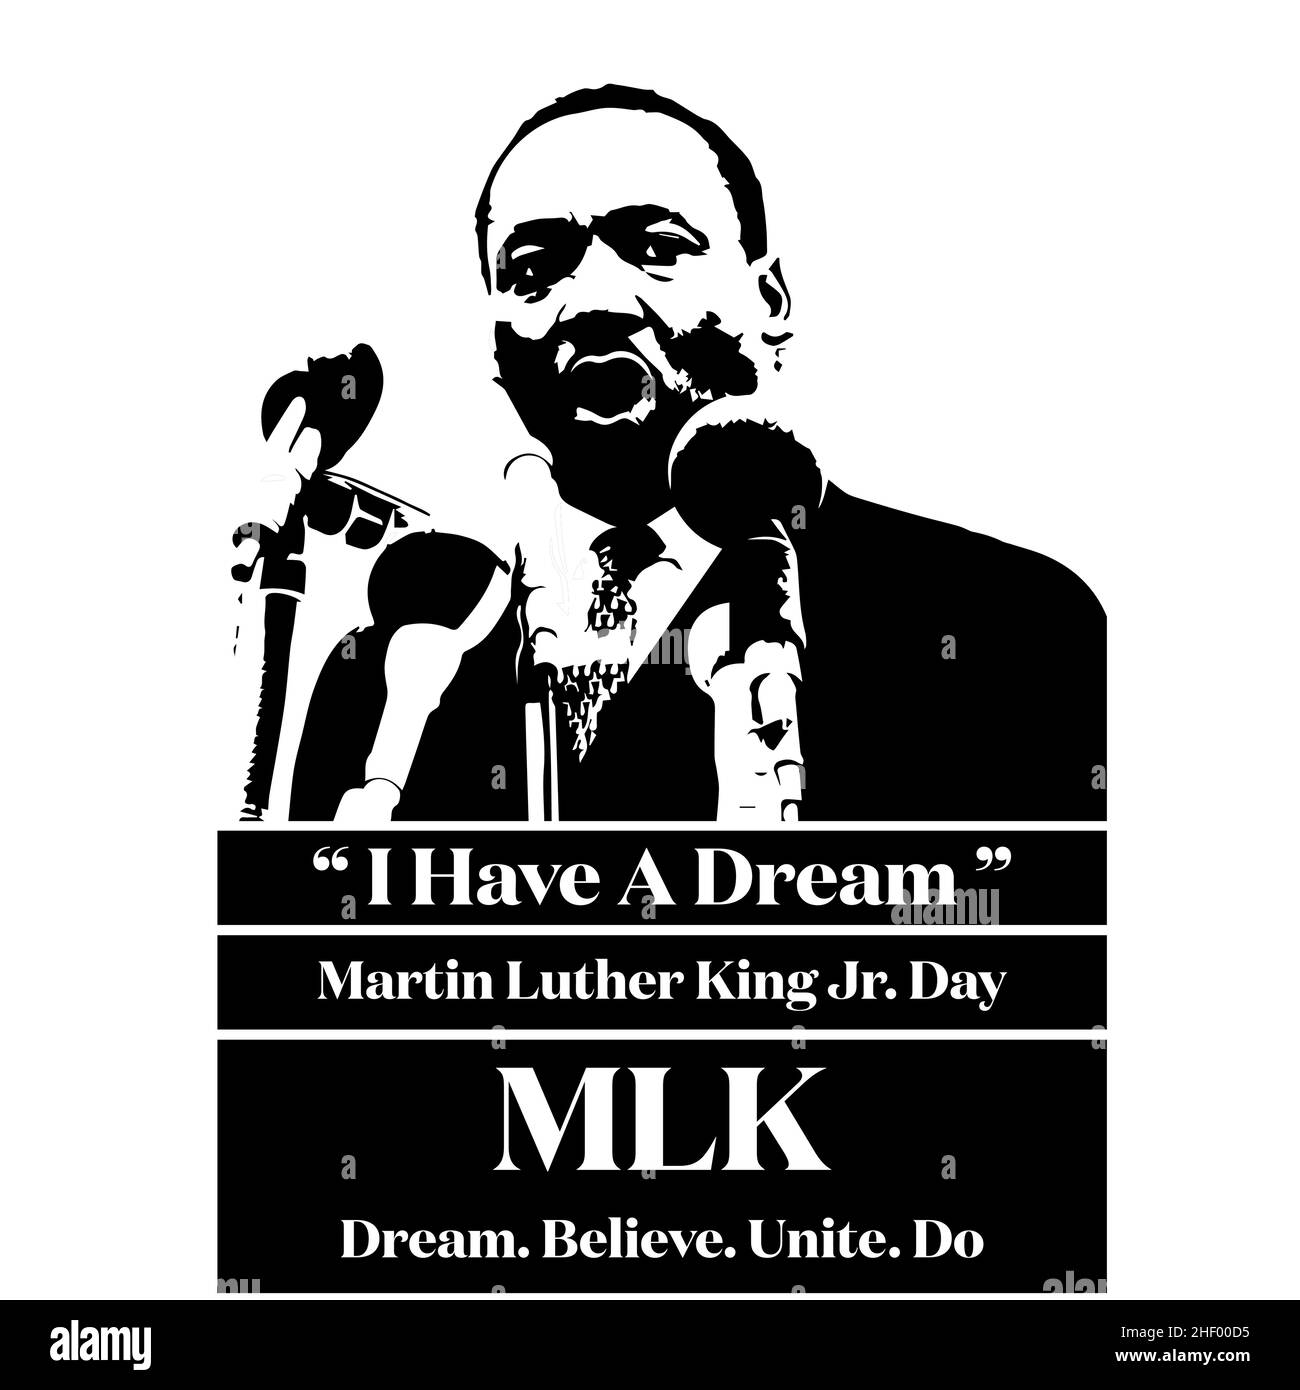 Martin Luther King Day - J'ai un rêve - MLK - rêve.Croyez.Unissez-vous.Faire - Illustration vectorielle Illustration de Vecteur